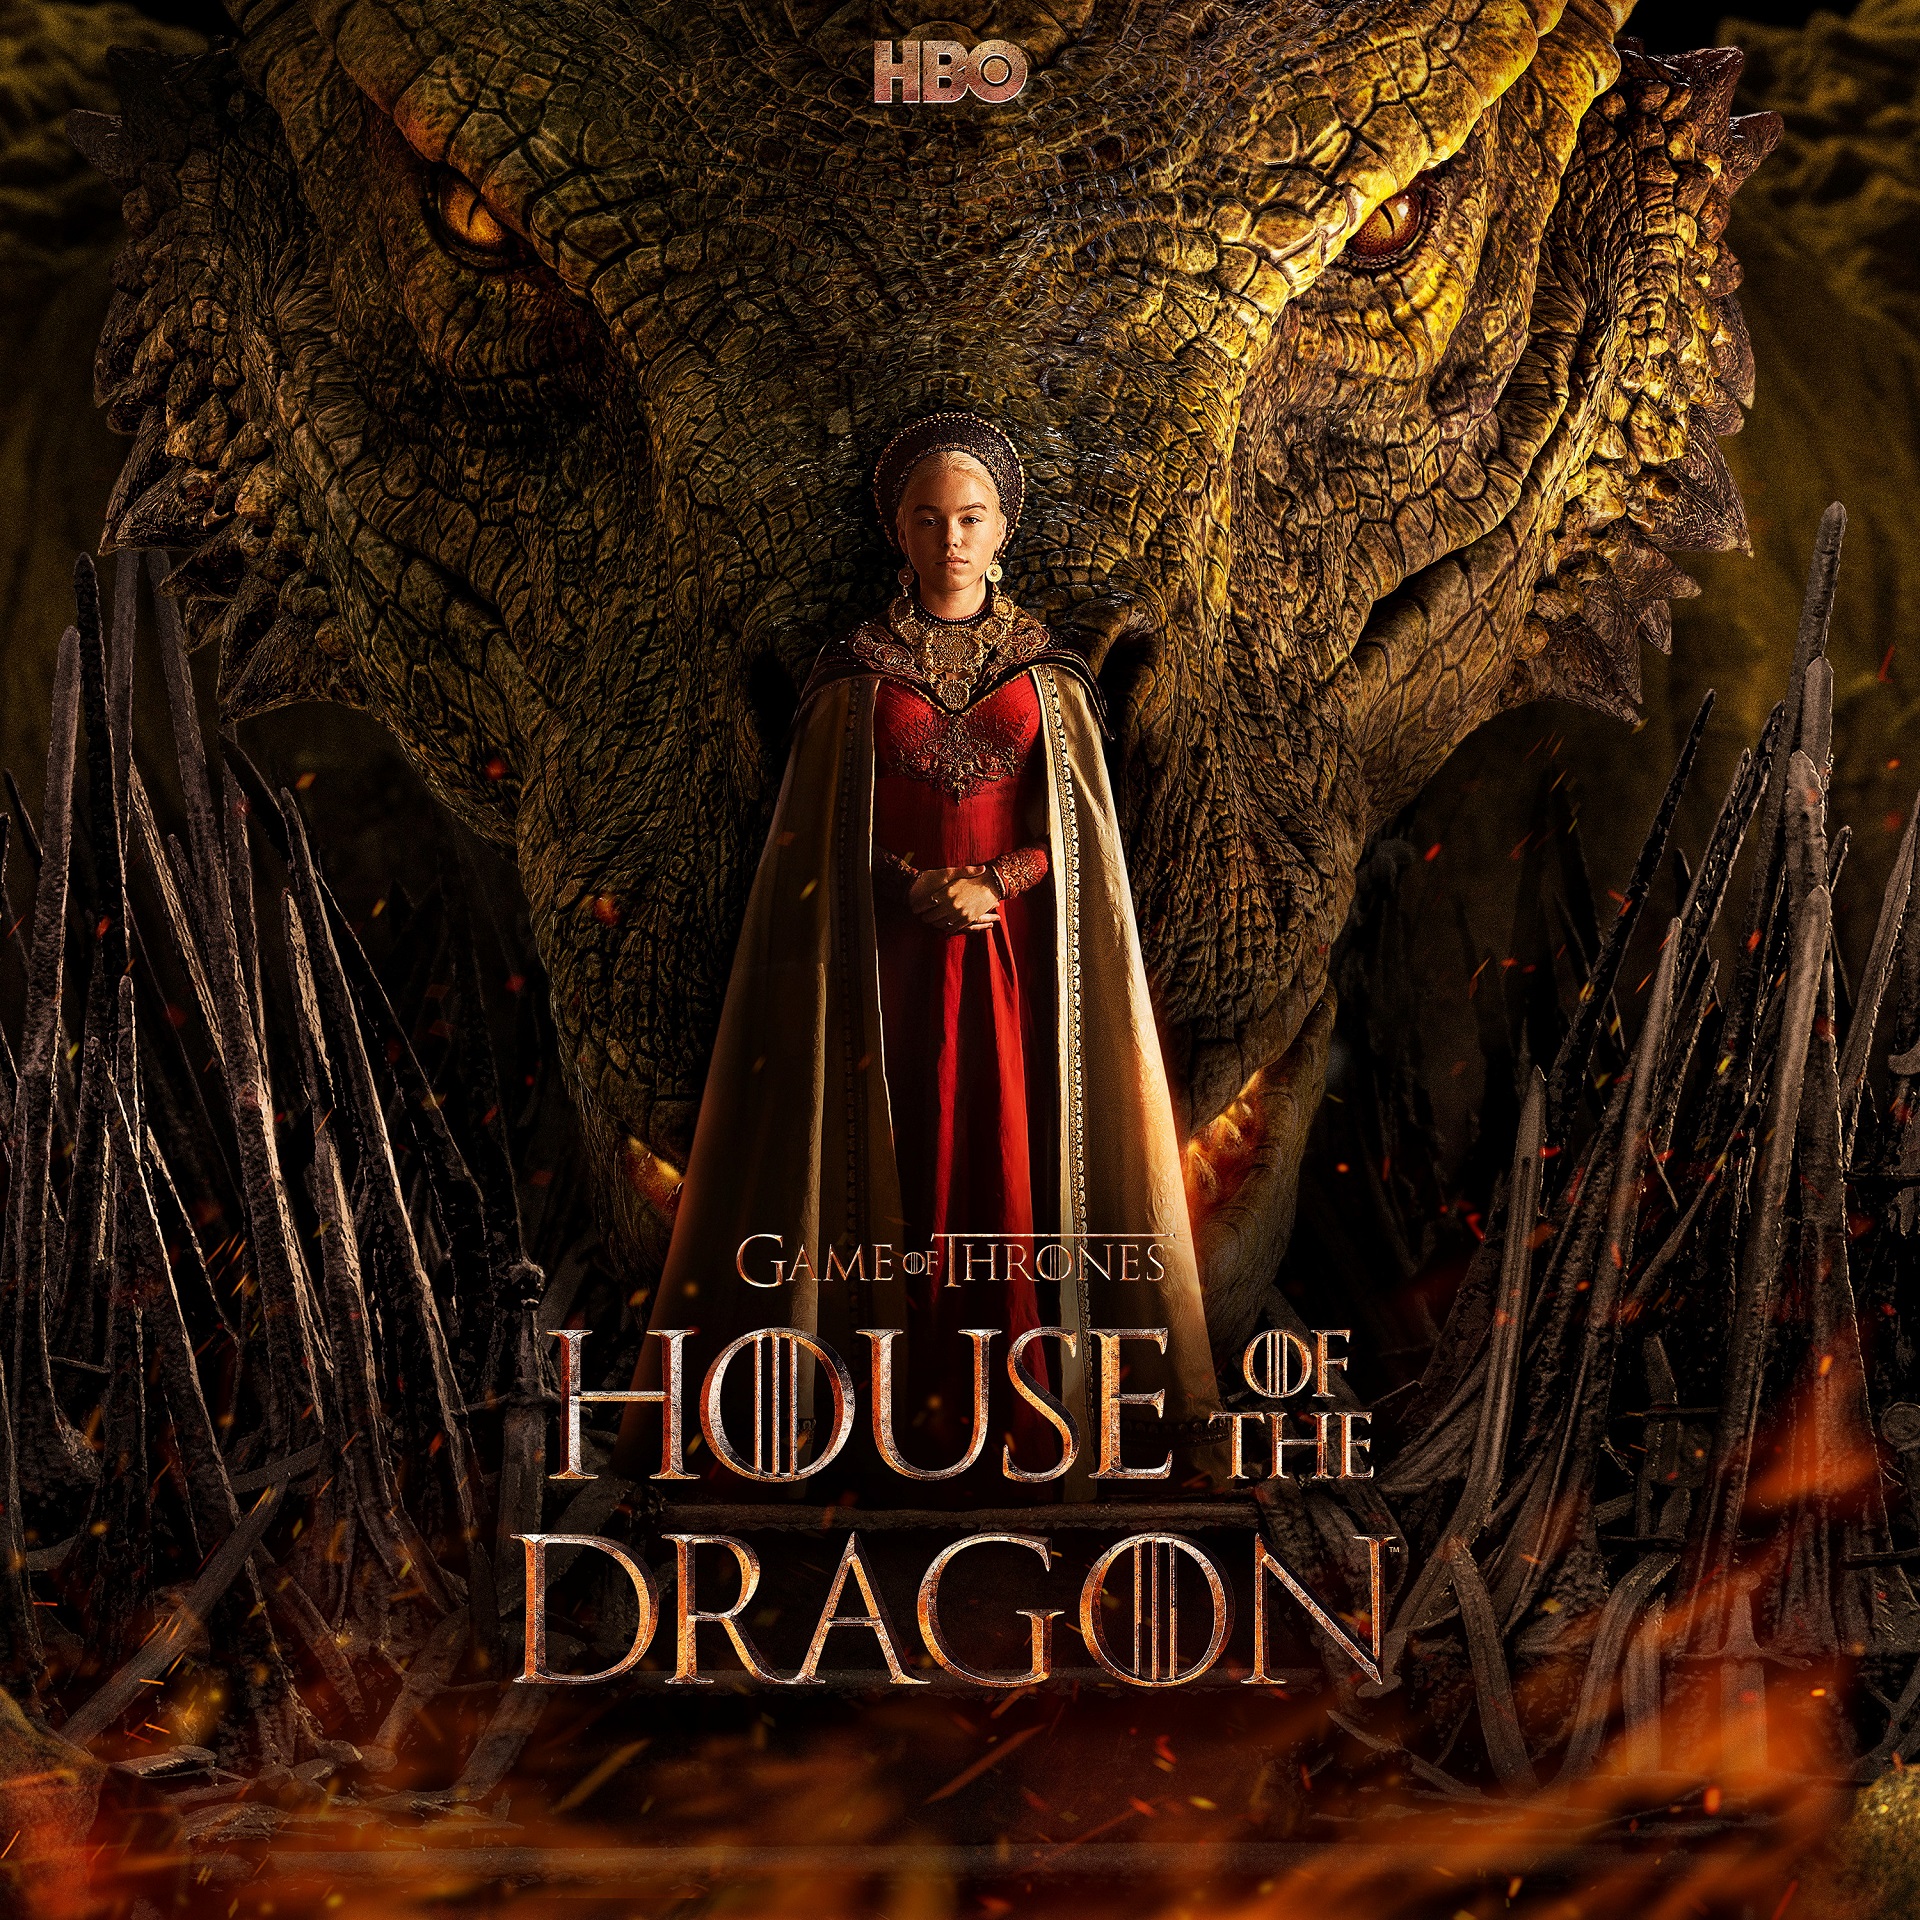 Das Poster der Serie zeigt die Prinzessin in rotem Kleid vor einem großen Drachenkopf